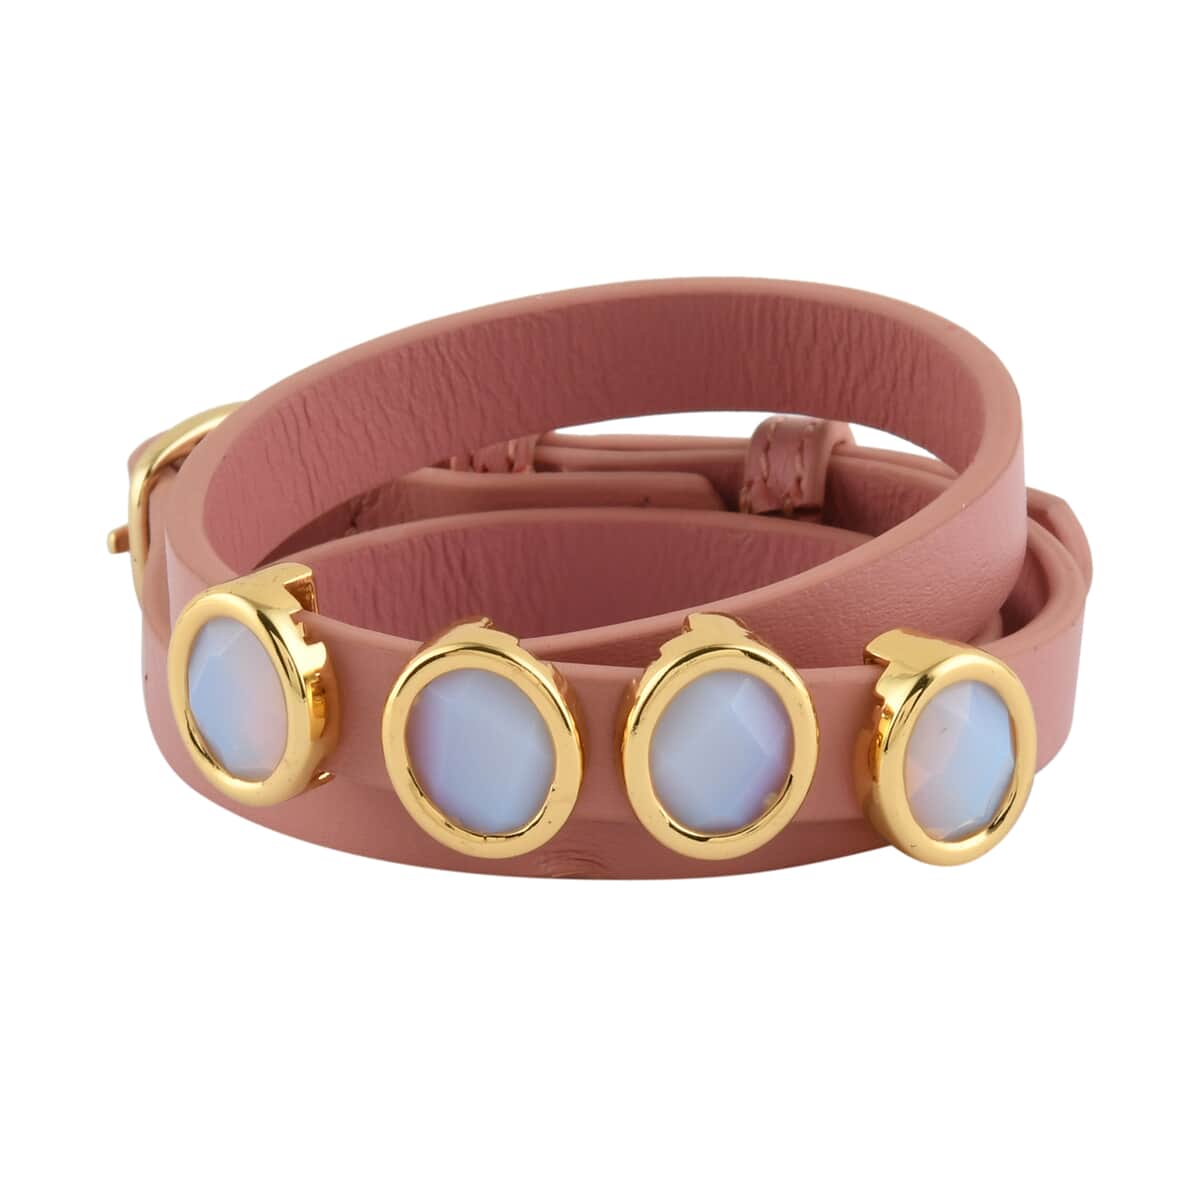 White Chalcedony Bracelet in Goldtone| Pink Leather Wrap Bracelet For Women| Adjustable Bracelet image number 0